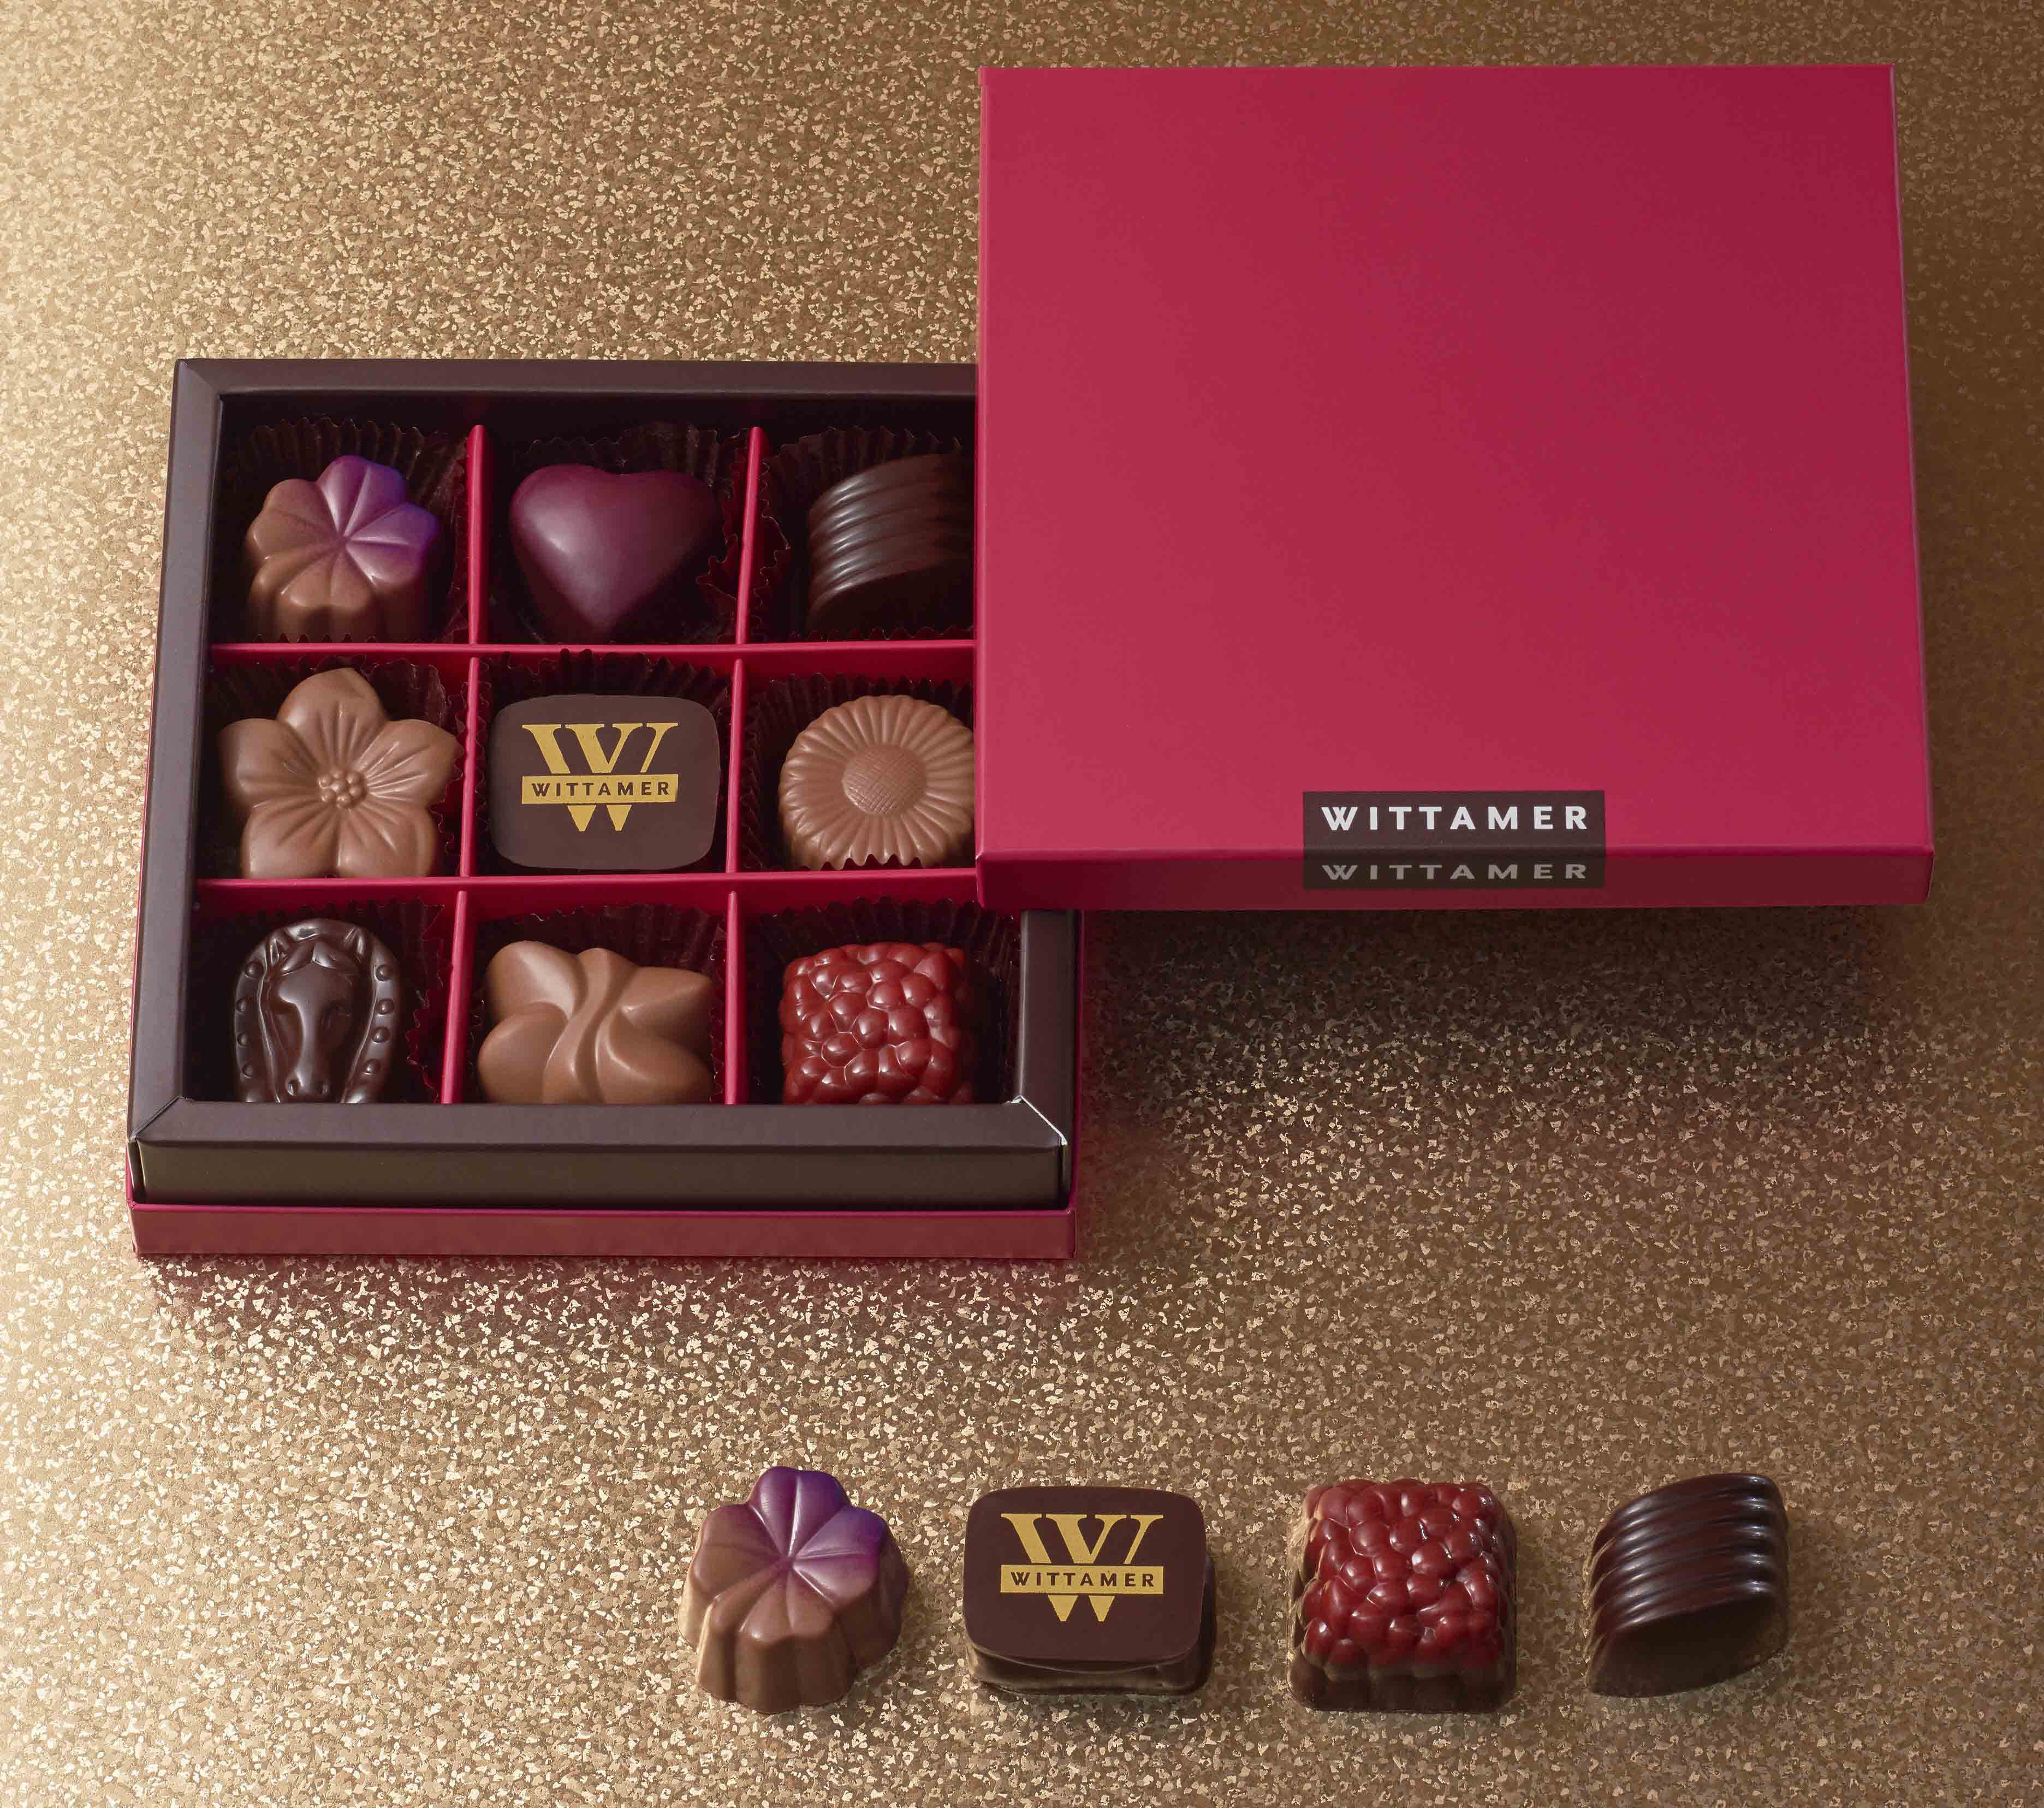 ベルギー王室御用達チョコレートブランド ヴィタメール 19年 バレンタイン ショコラ コレクションをご紹介いたします 株式会社 エーデルワイスのプレスリリース